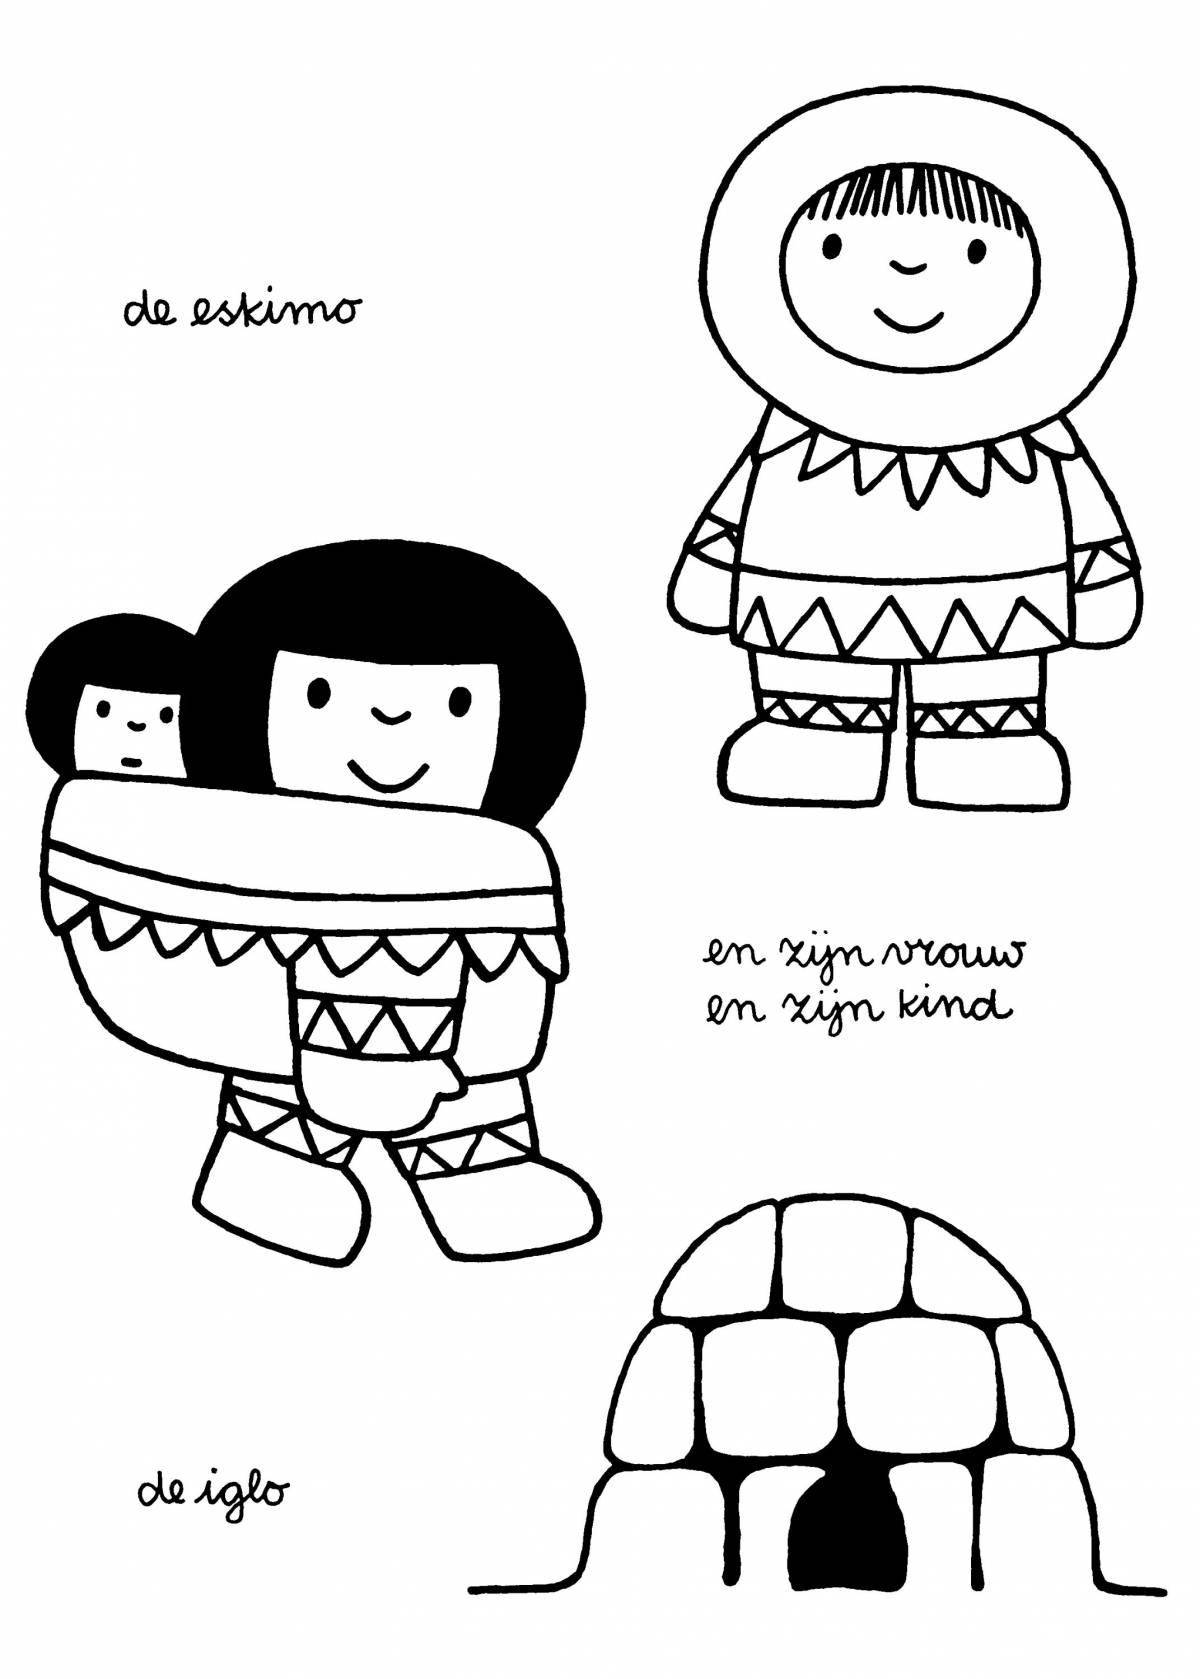 Creative eskimo coloring book